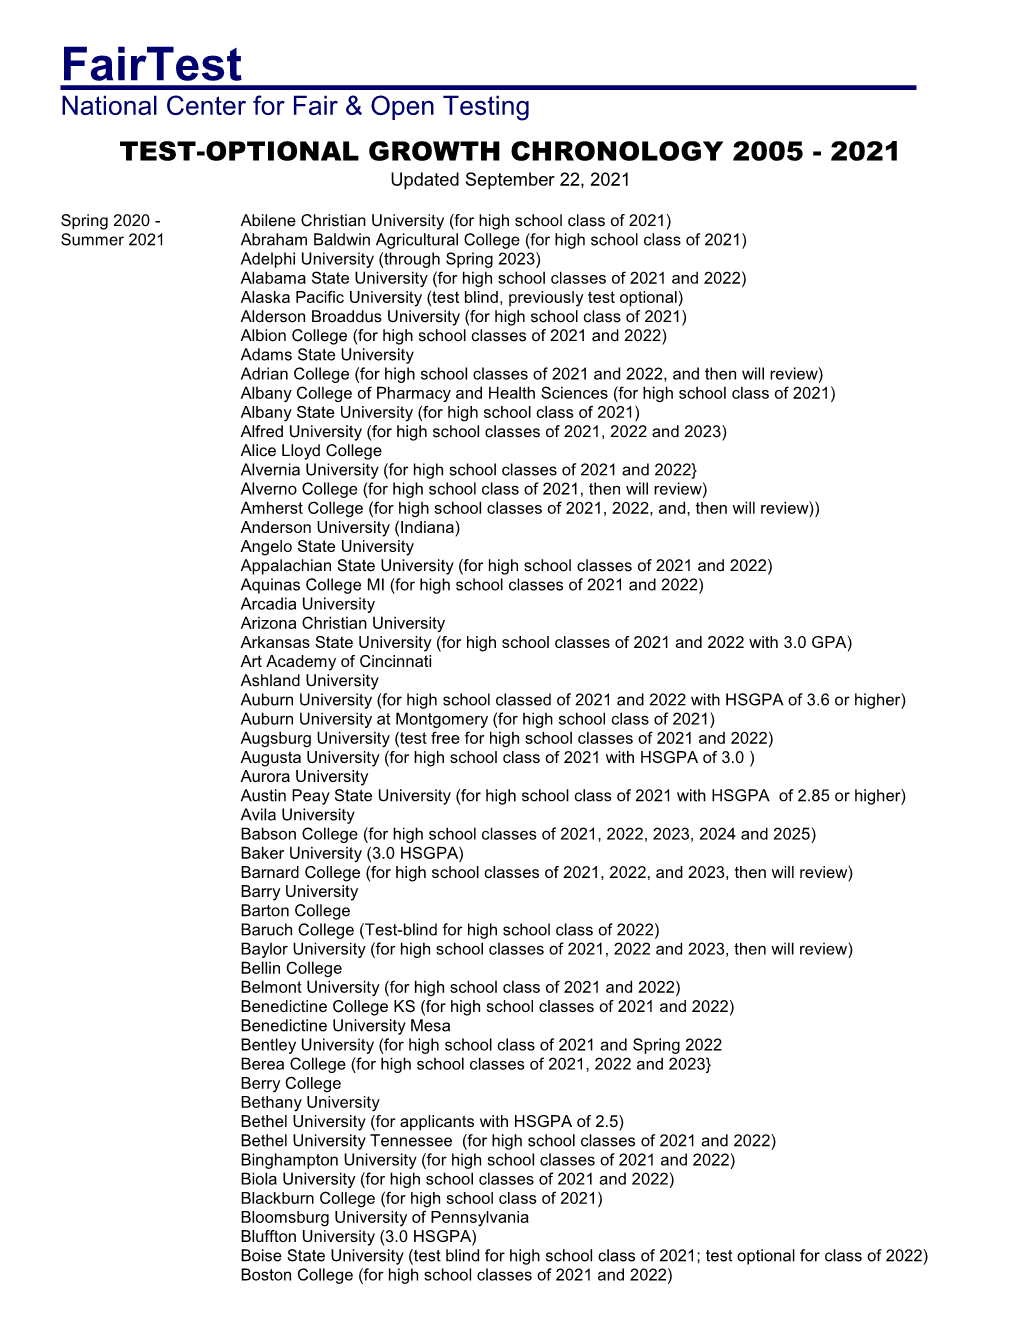 Test-Optional Growth Chronology 2005–2021